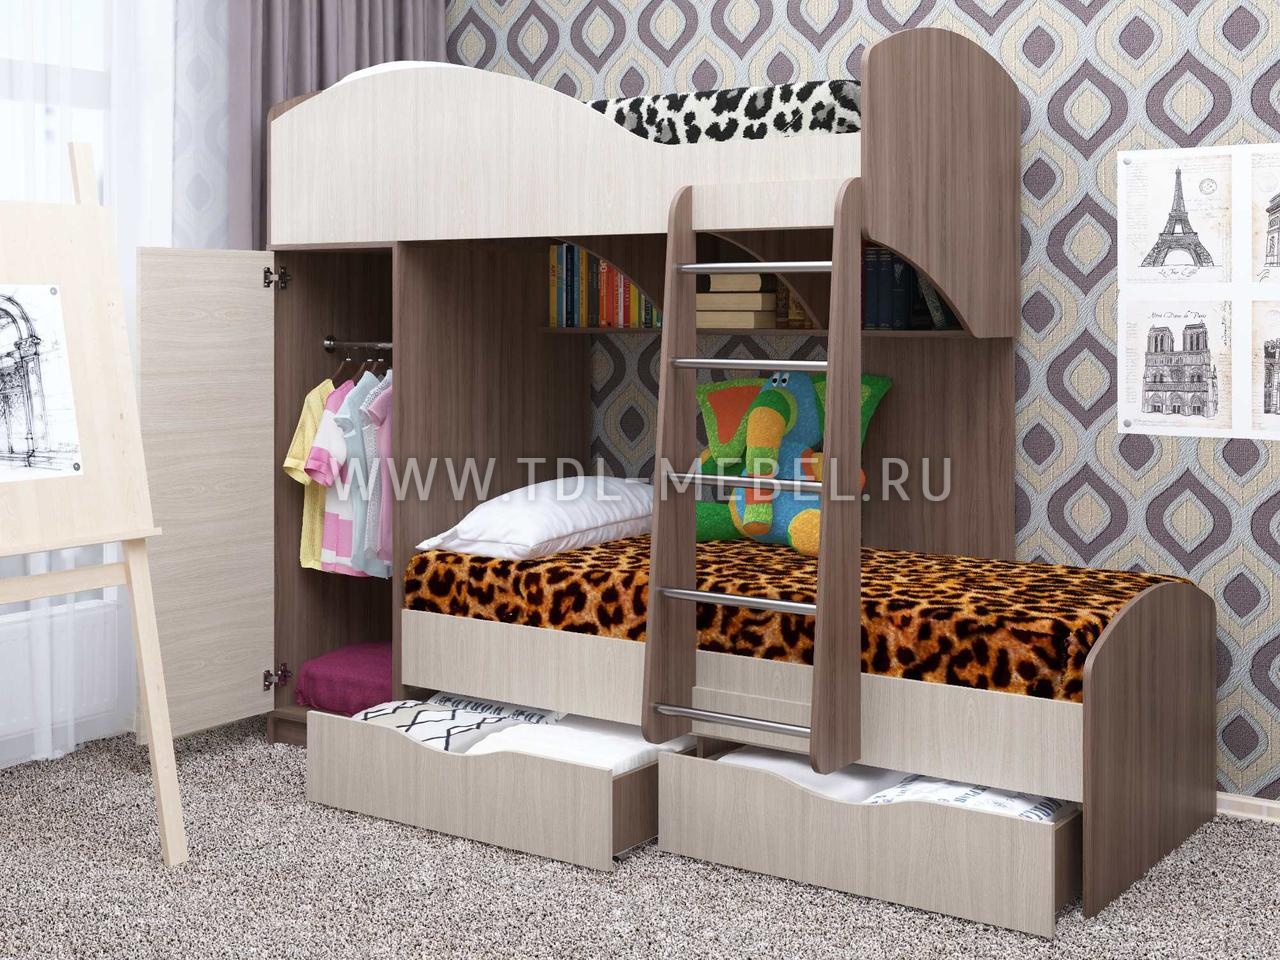 Двухъярусная кровать со шкафом, варианты исполнения и расположения элементов